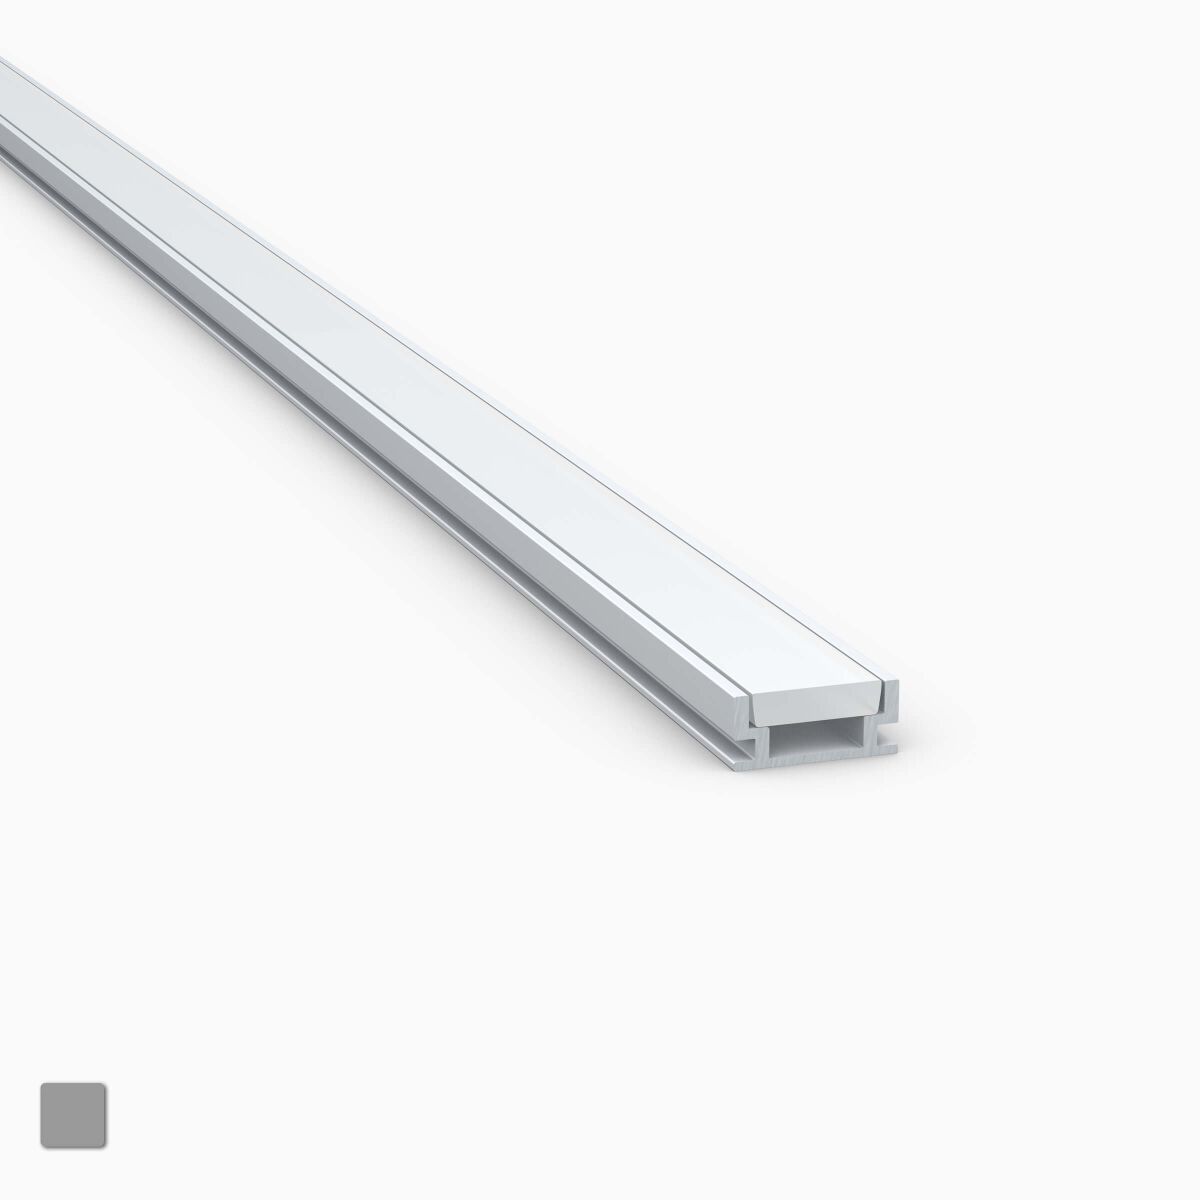 Endkappen Großes Alu Einbau Profil R21 Leiste für LED Streifen bis 31mm inkl 